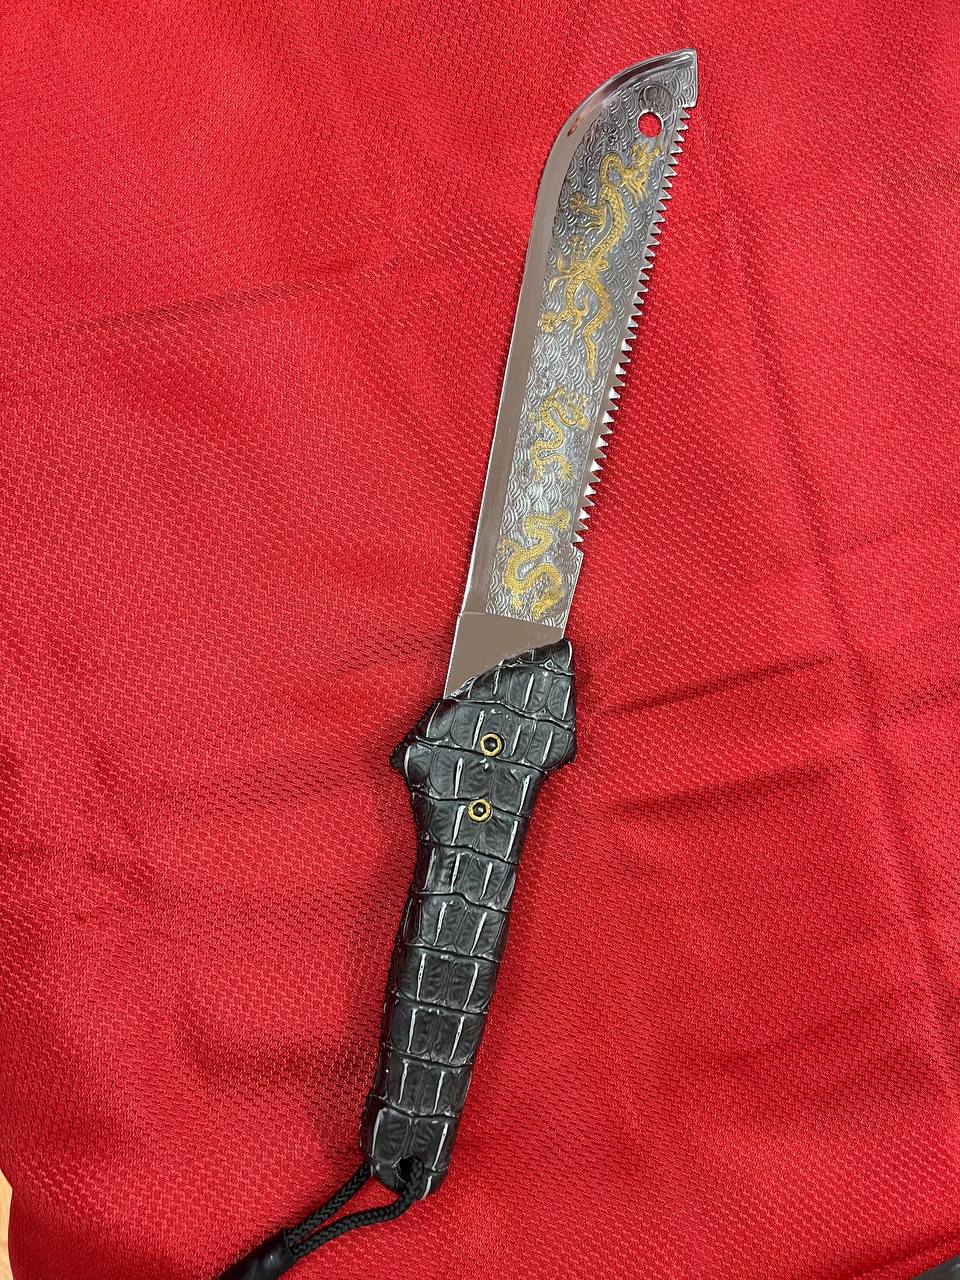 Ingraved dragon Knife